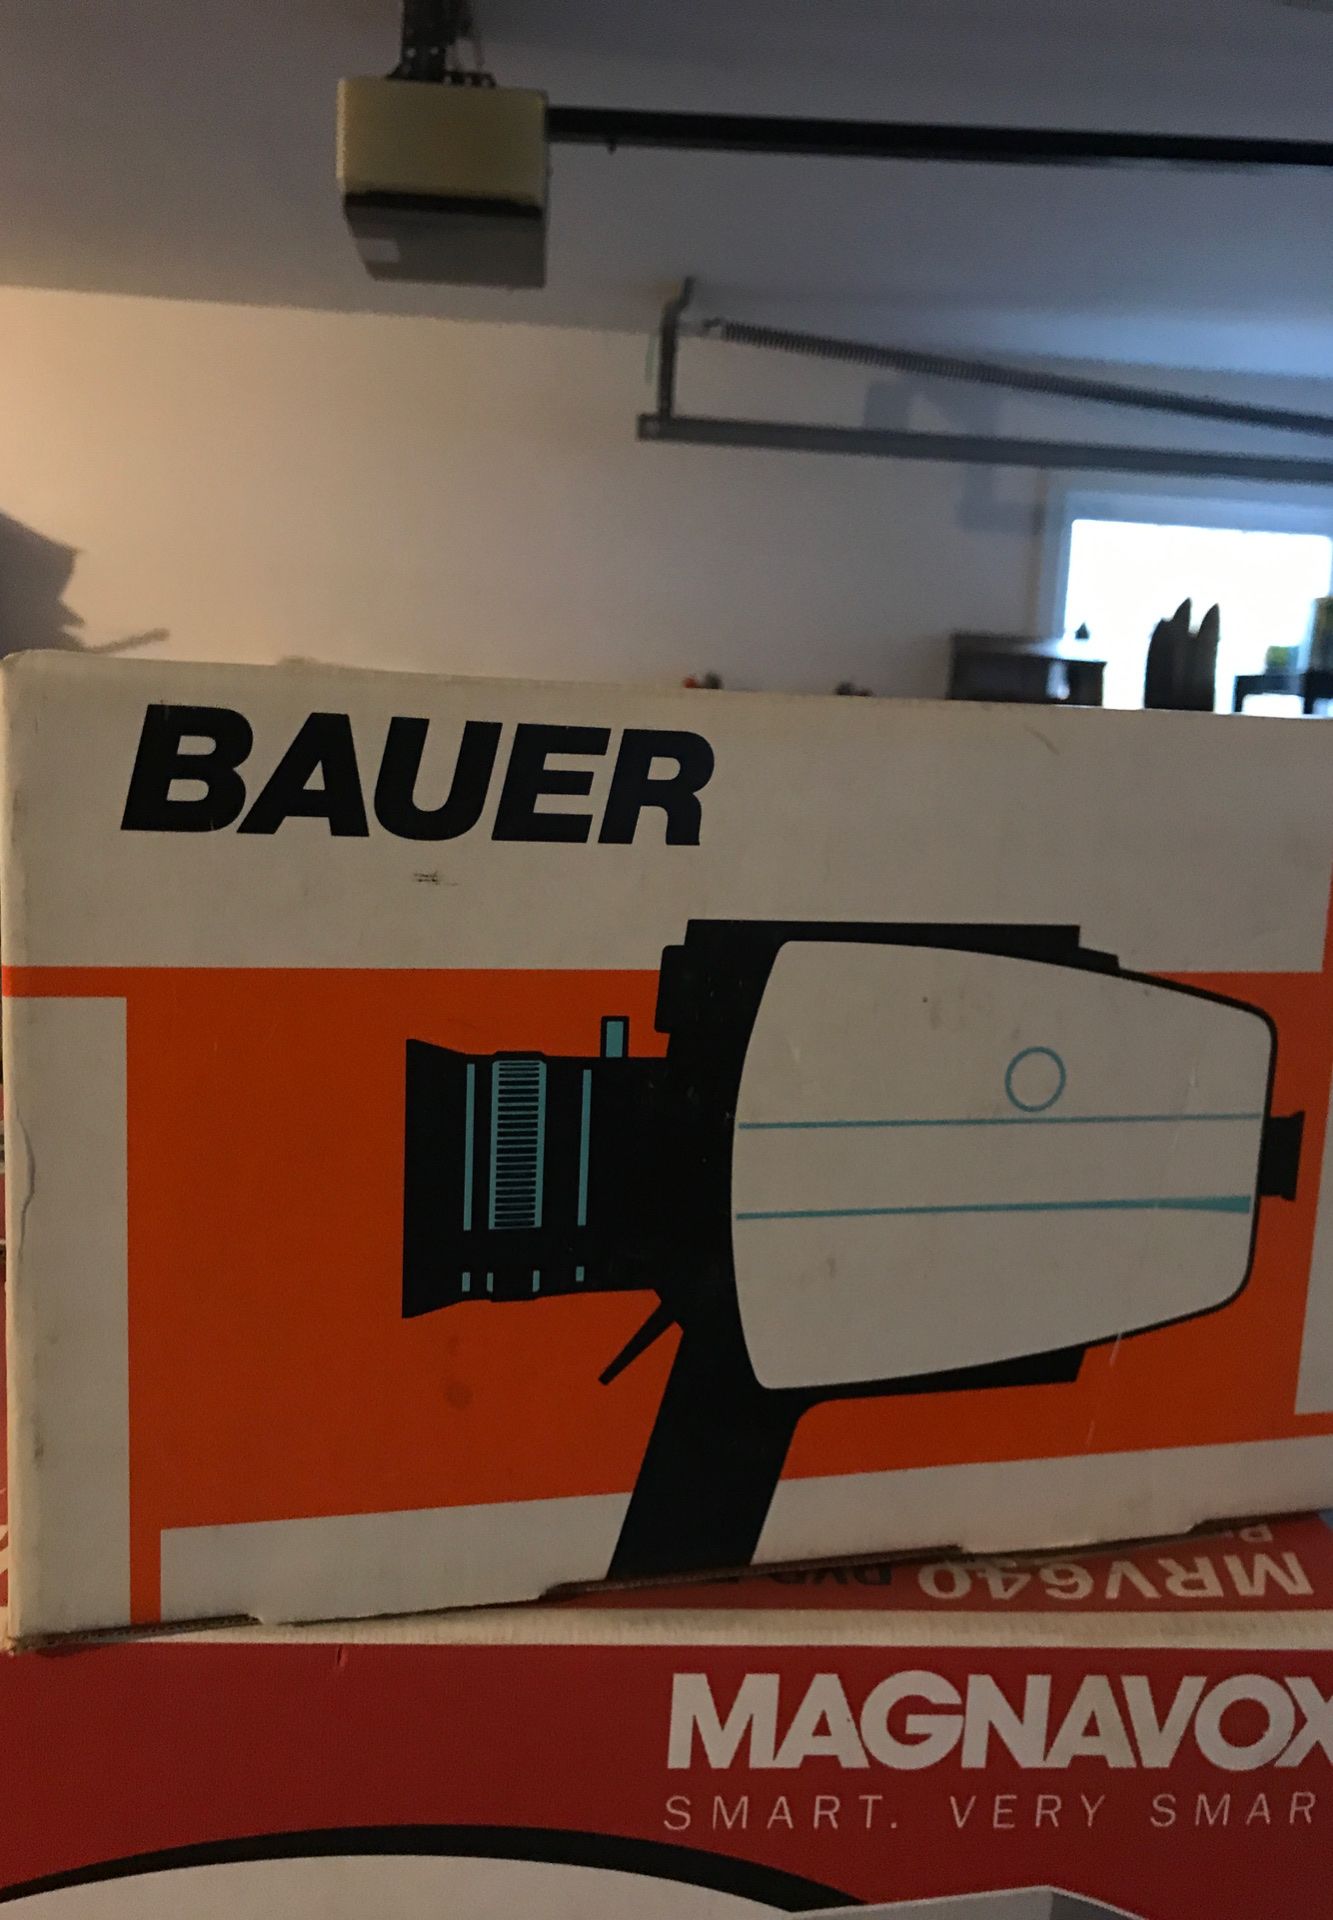 Bauer movie camera